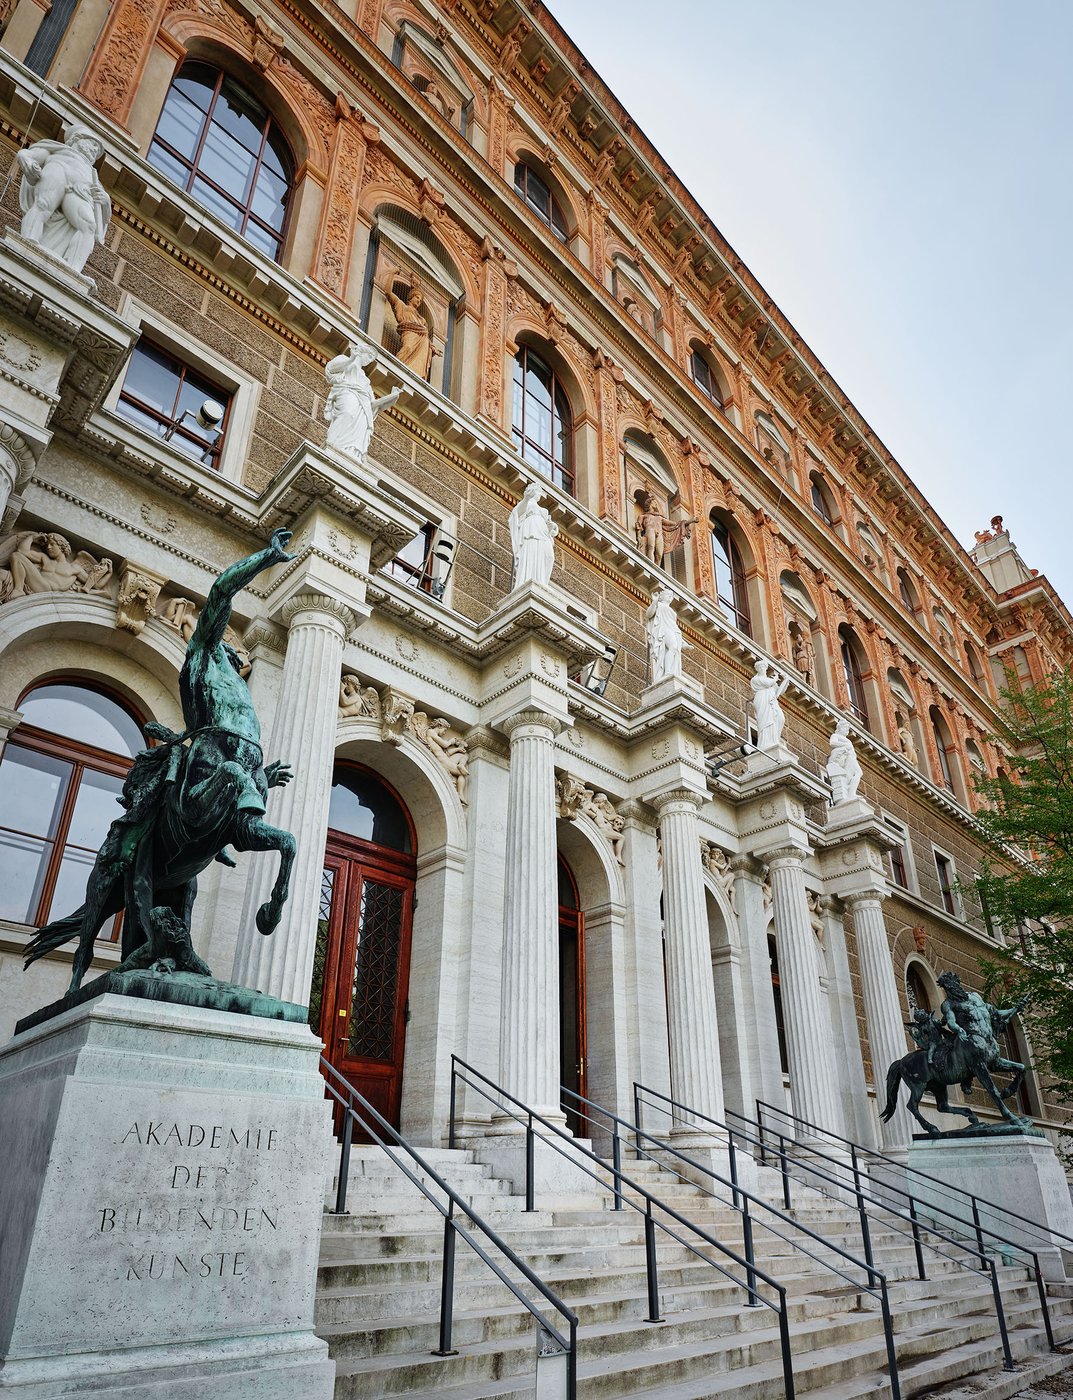 Bild von der Fassade des Akademiegebäudes am Schillerplatz, Statuen, Aufnahme von links unten nach rechts oben